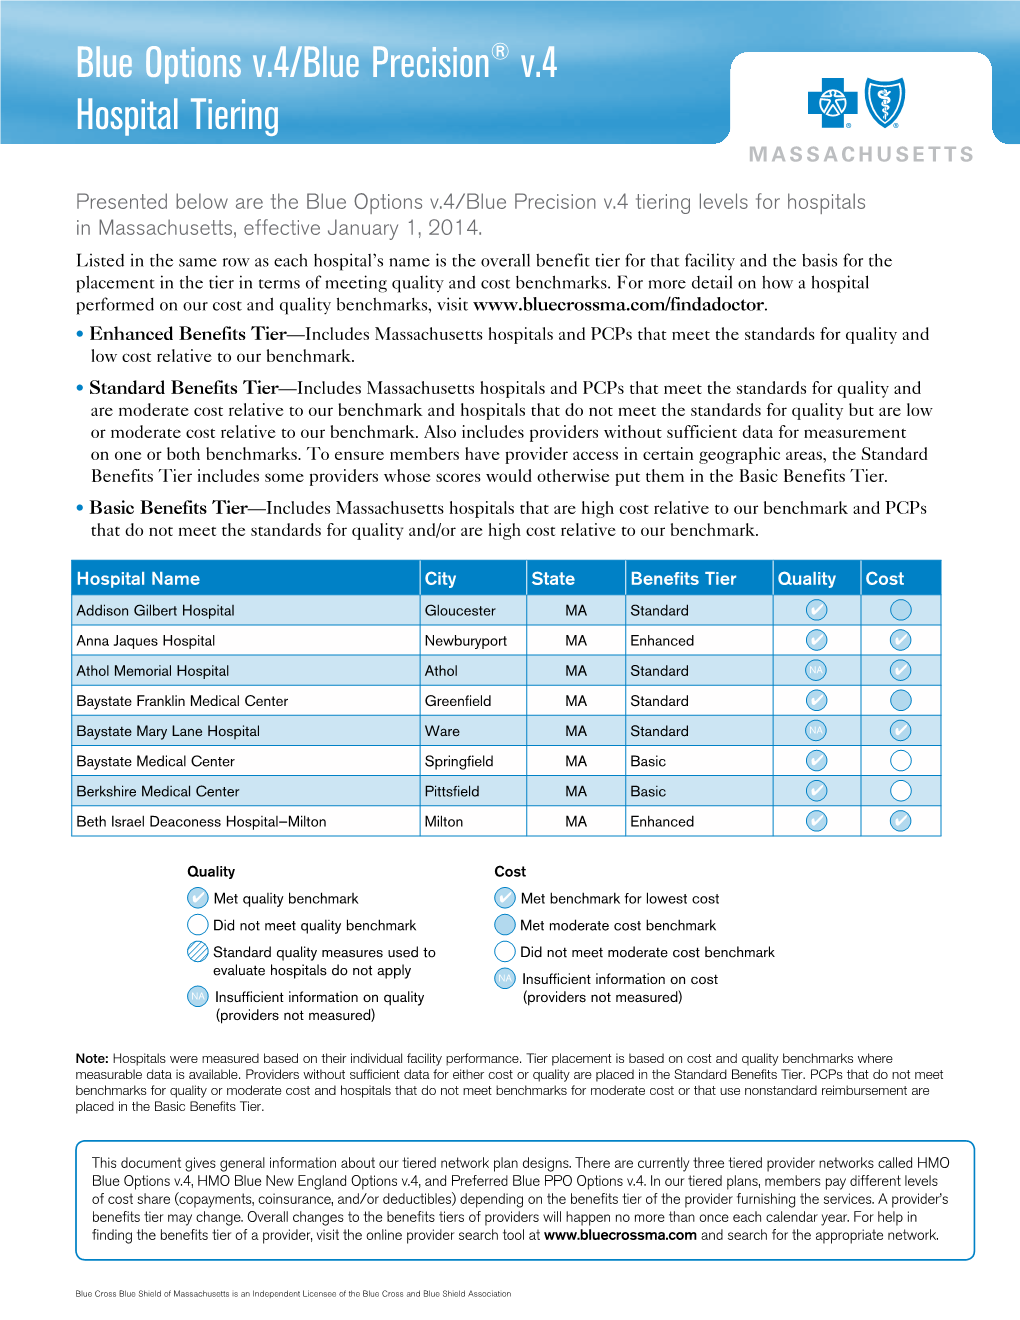 Blue Options V.4/Blue Precision® V.4 Hospital Tiering